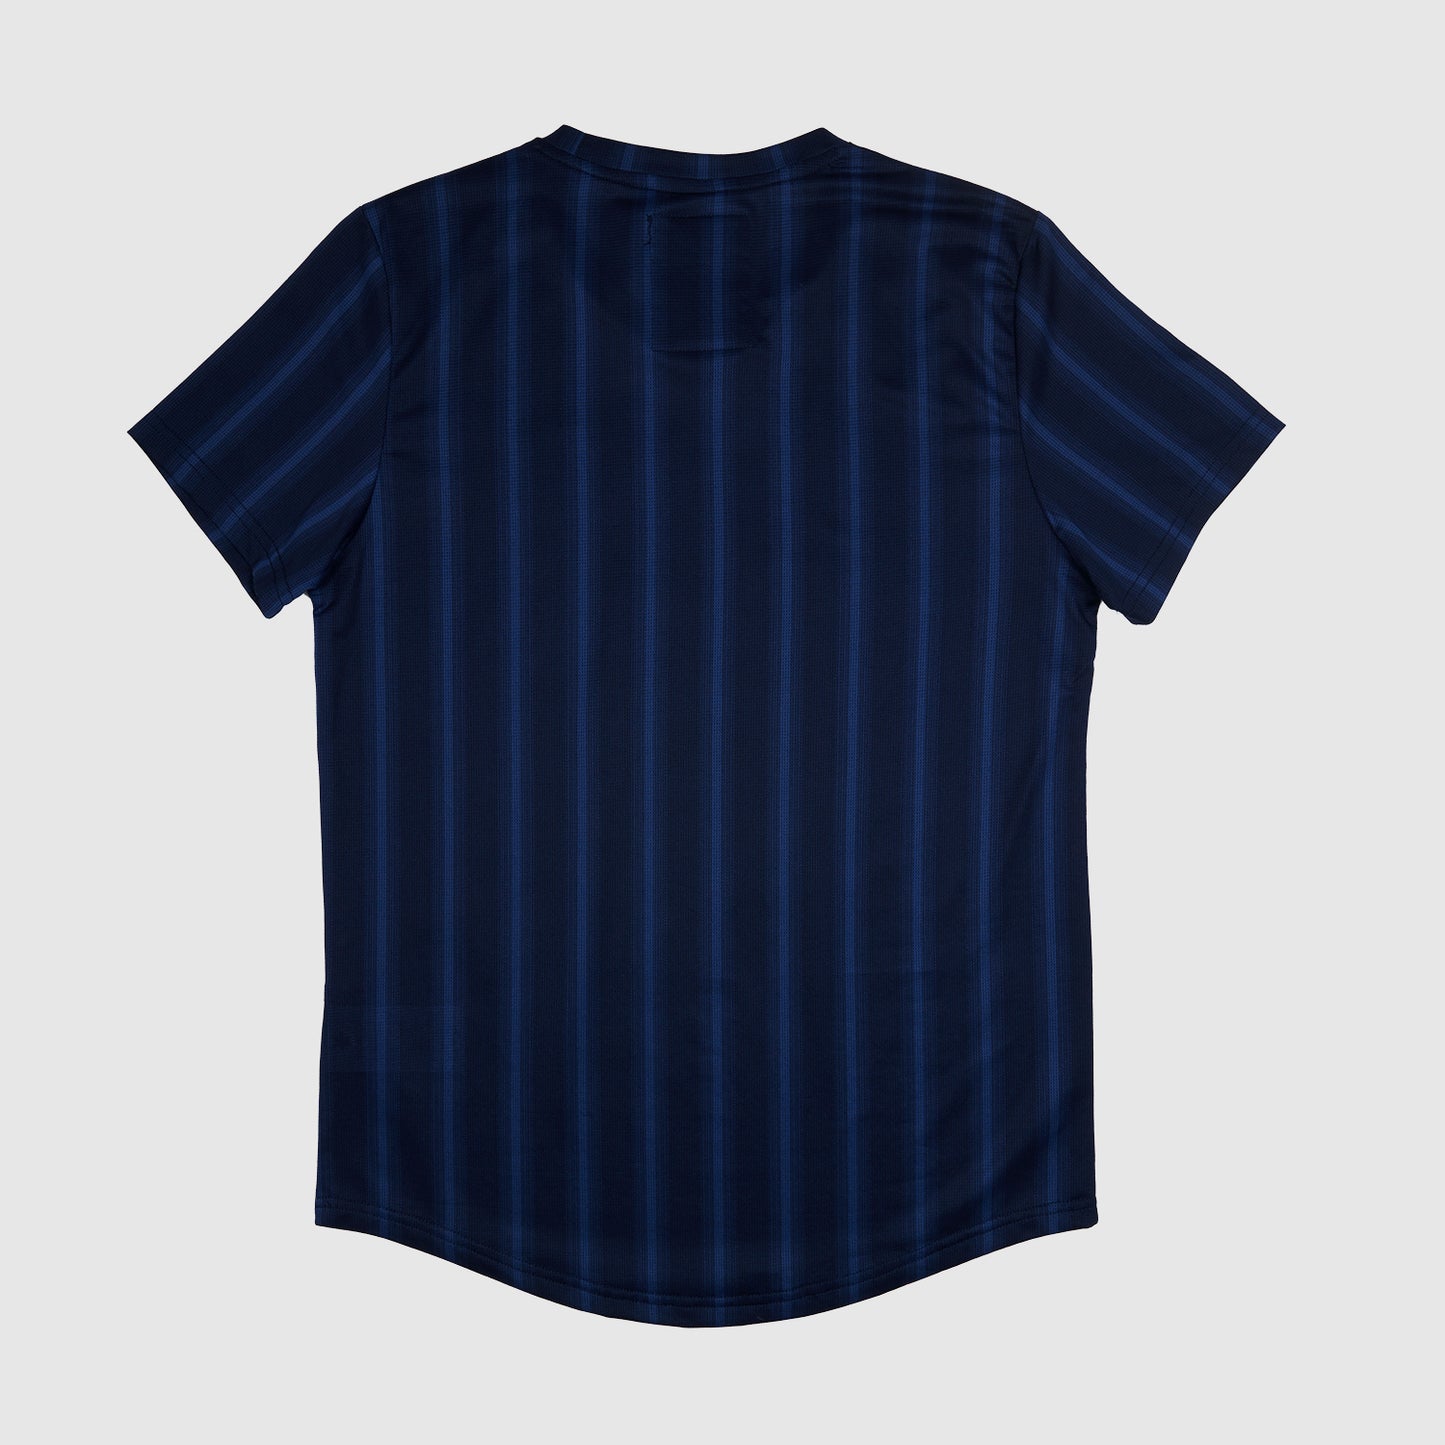 ランニングTシャツ ZMRSS05 Nn07 X Saysky Combat T-shirt - Black/Navy Stripe [ユニセックス]